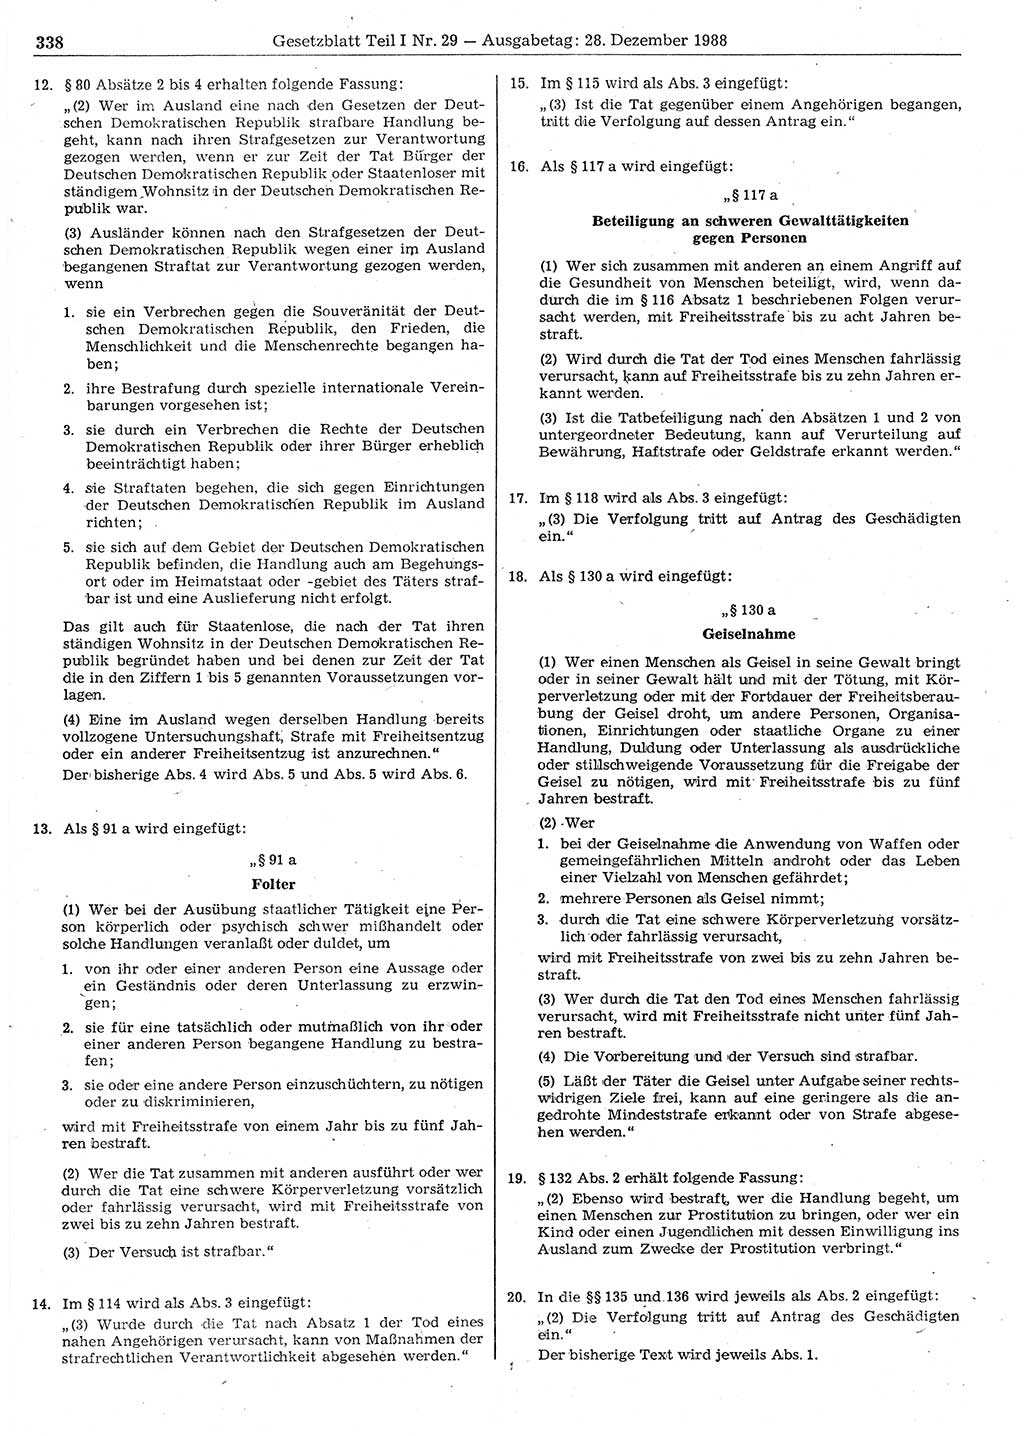 Gesetzblatt (GBl.) der Deutschen Demokratischen Republik (DDR) Teil Ⅰ 1988, Seite 338 (GBl. DDR Ⅰ 1988, S. 338)